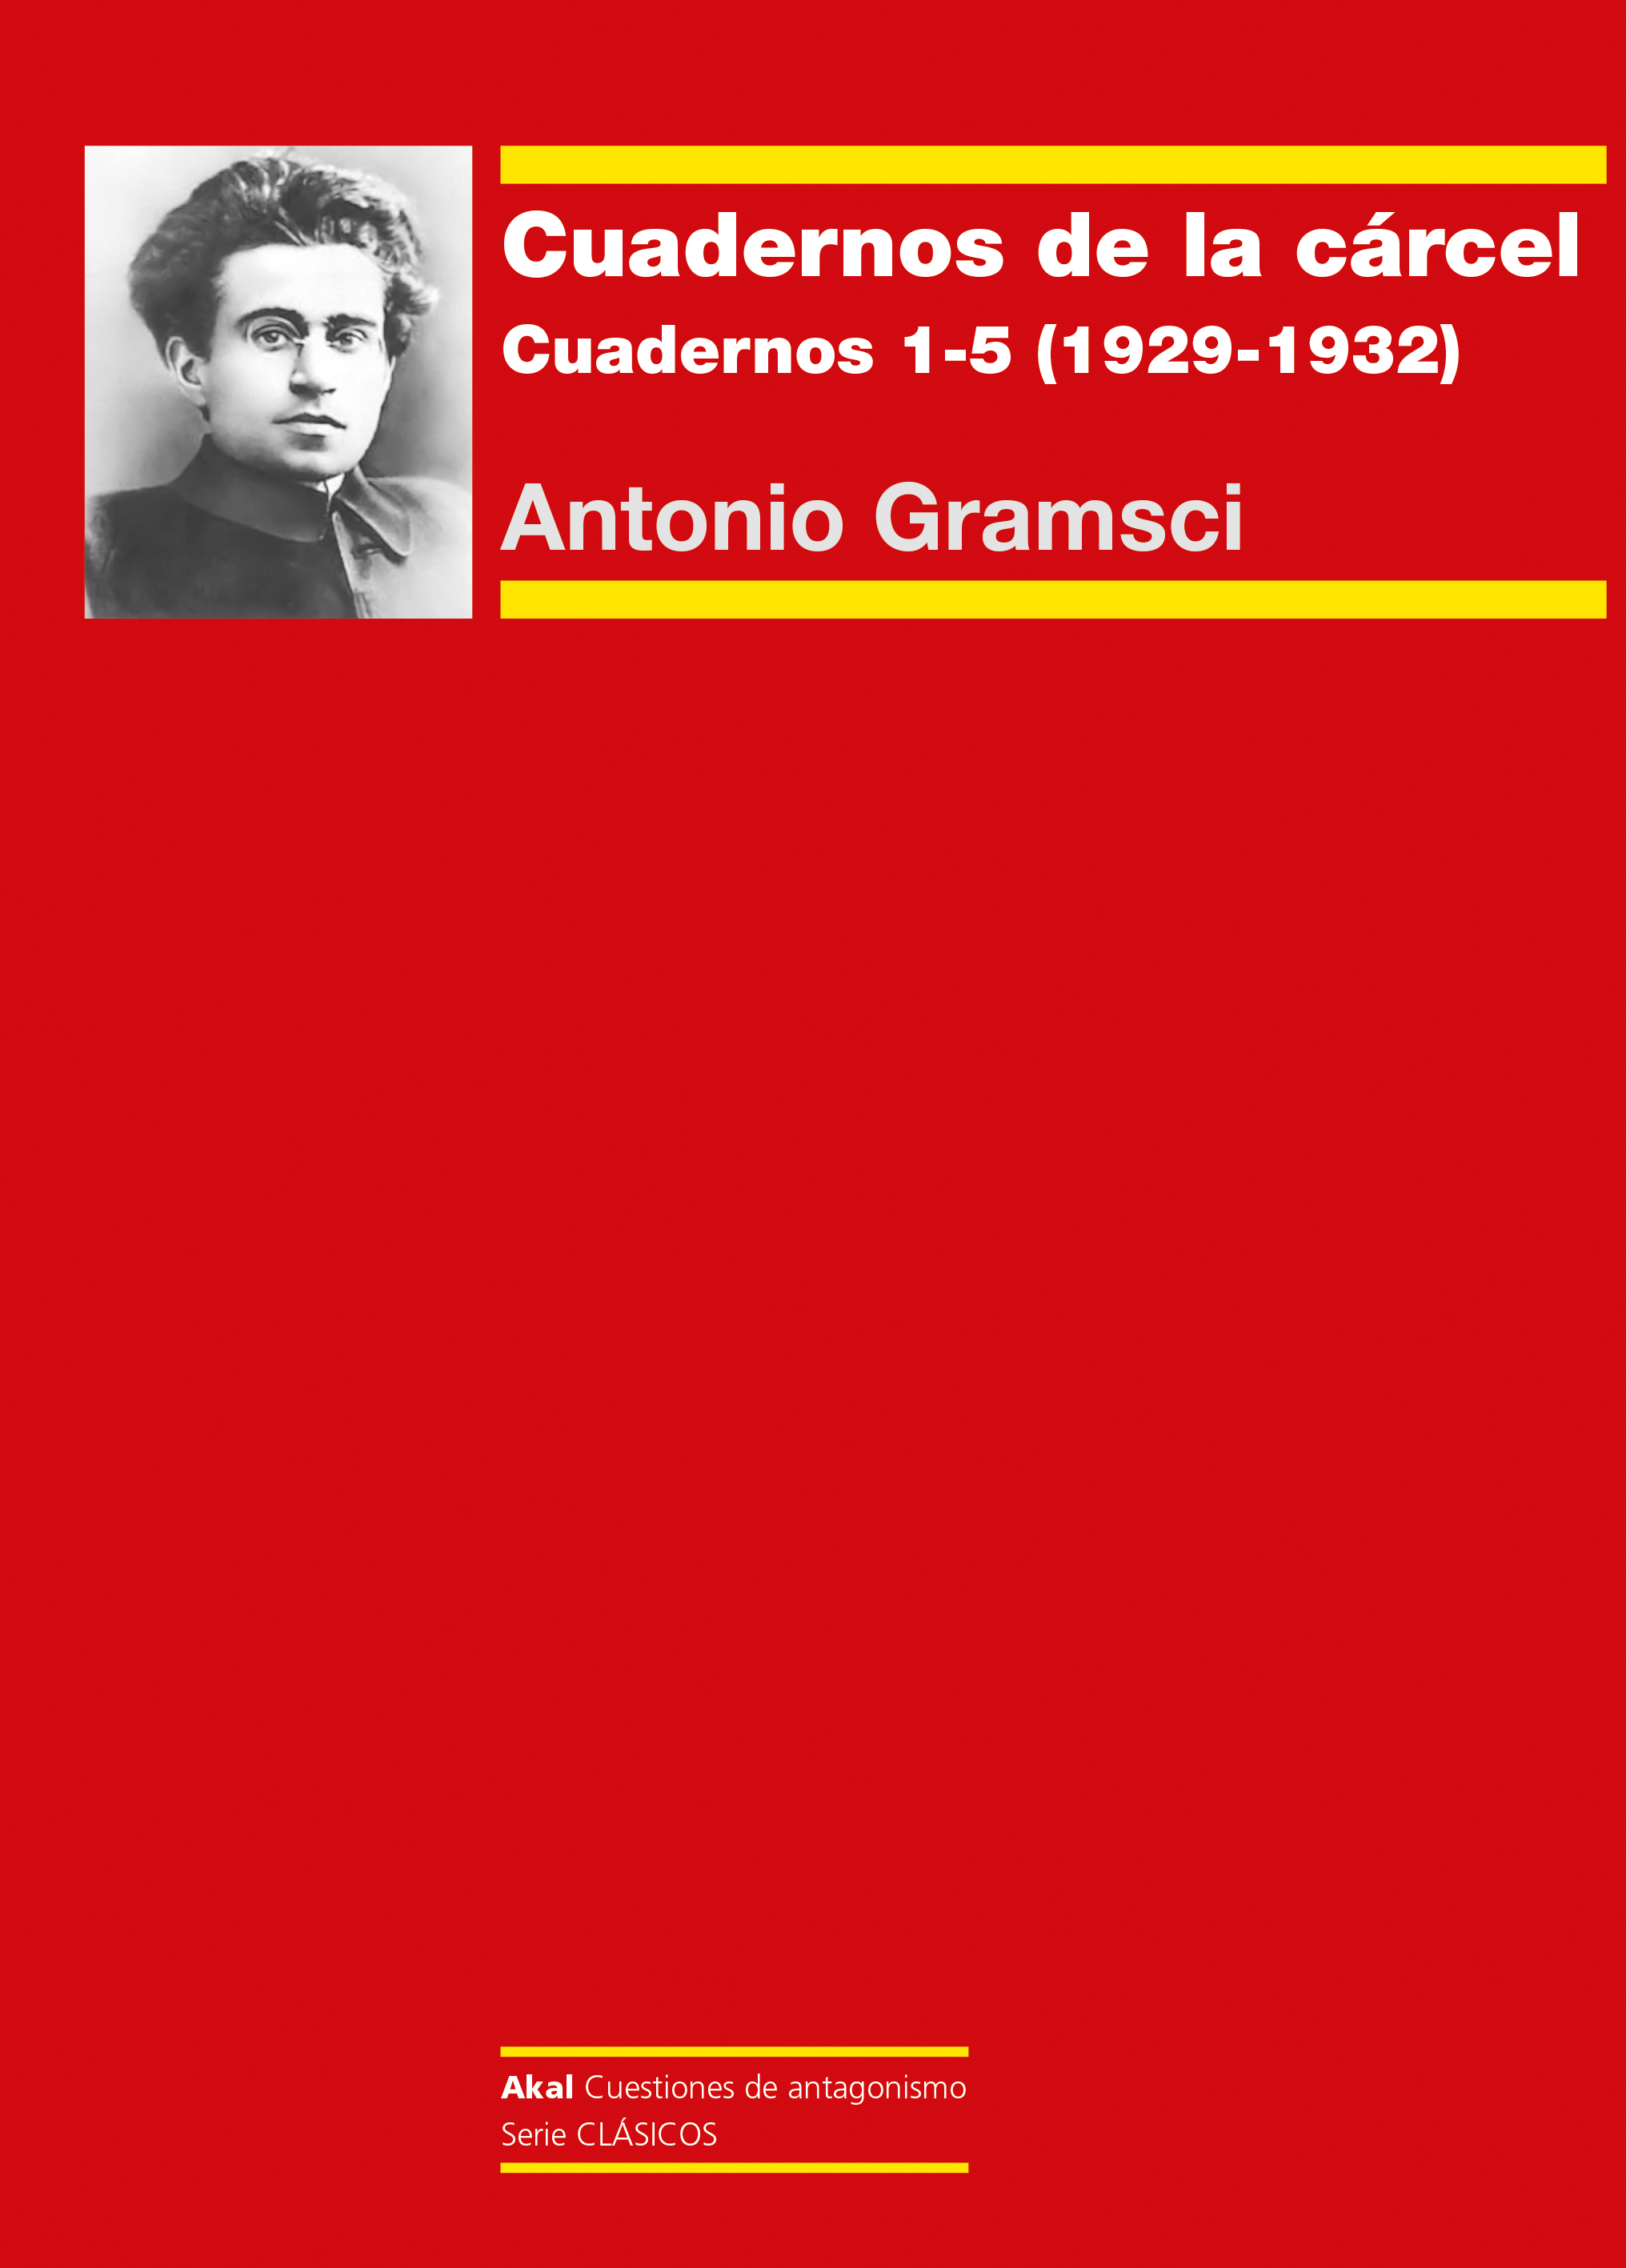 CUADERNOS DE LA CÁRCEL (1) - Antonio Gramsci